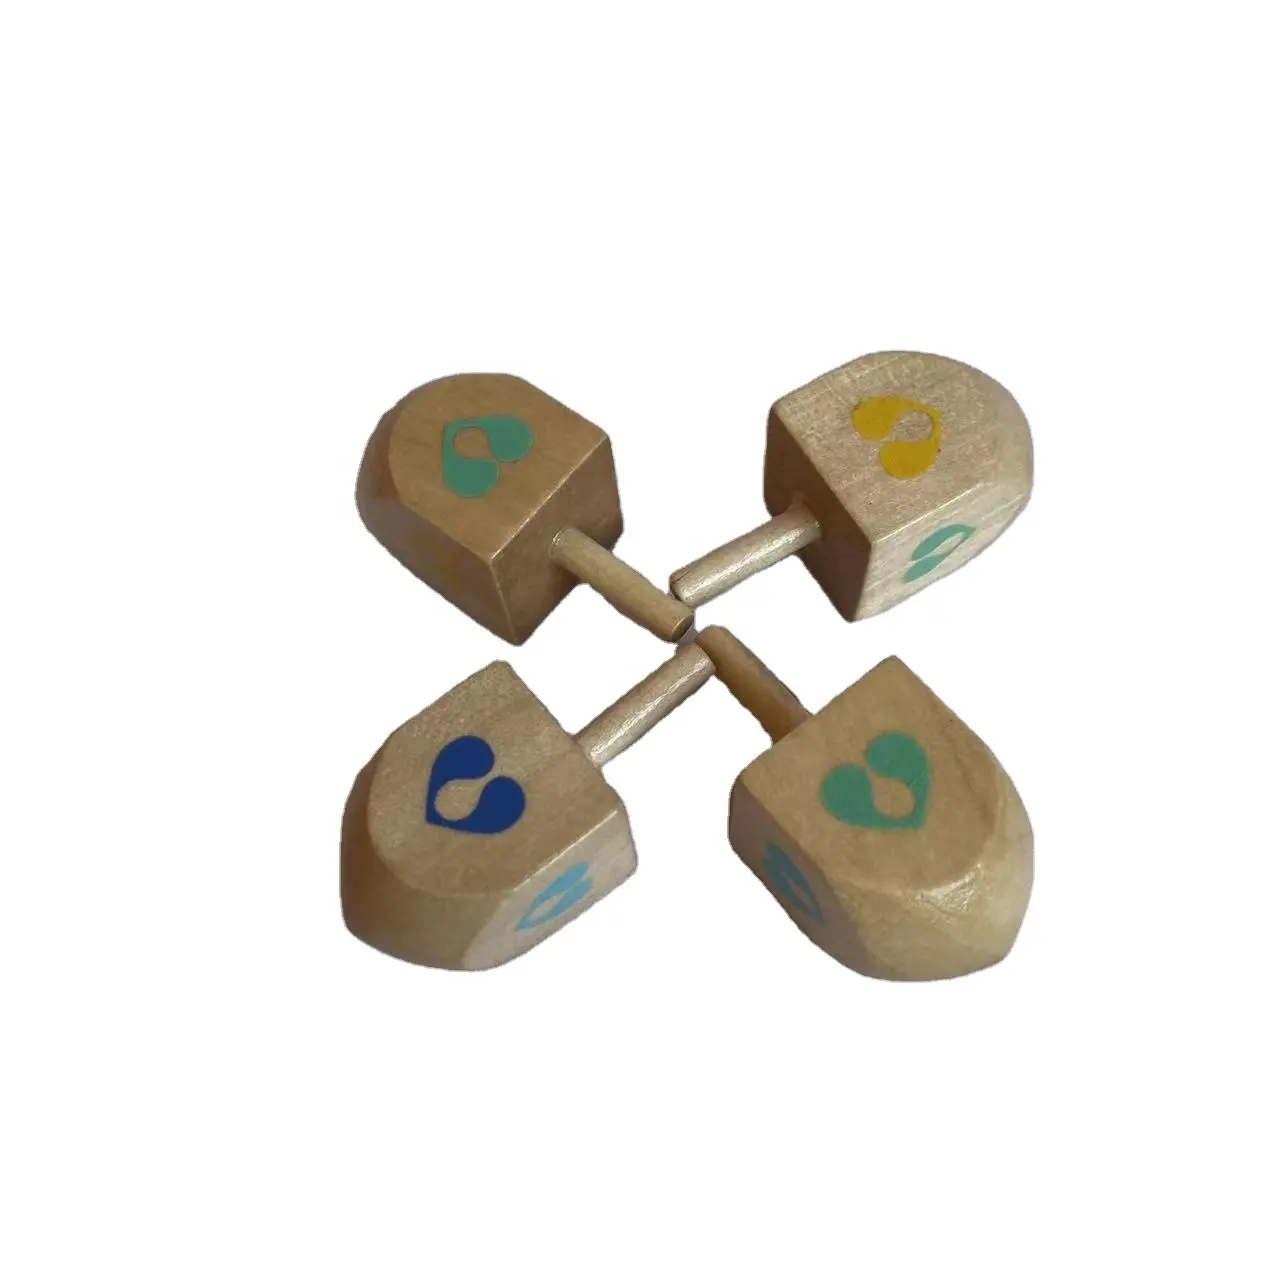 Brinquedo de madeira giratório, mini brinquedo giratório clássico personalizado para crianças